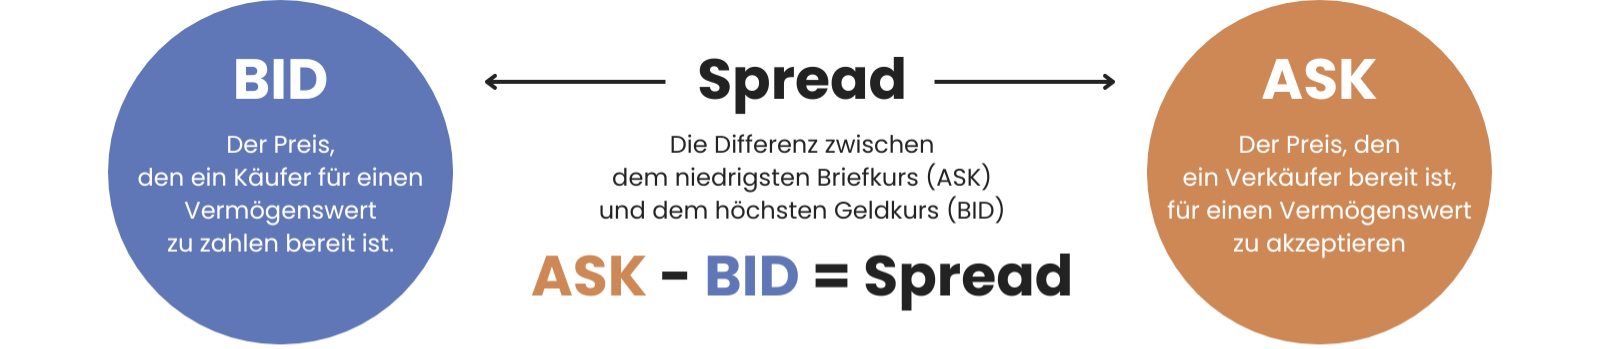 Bid Ask Spread Erklärt